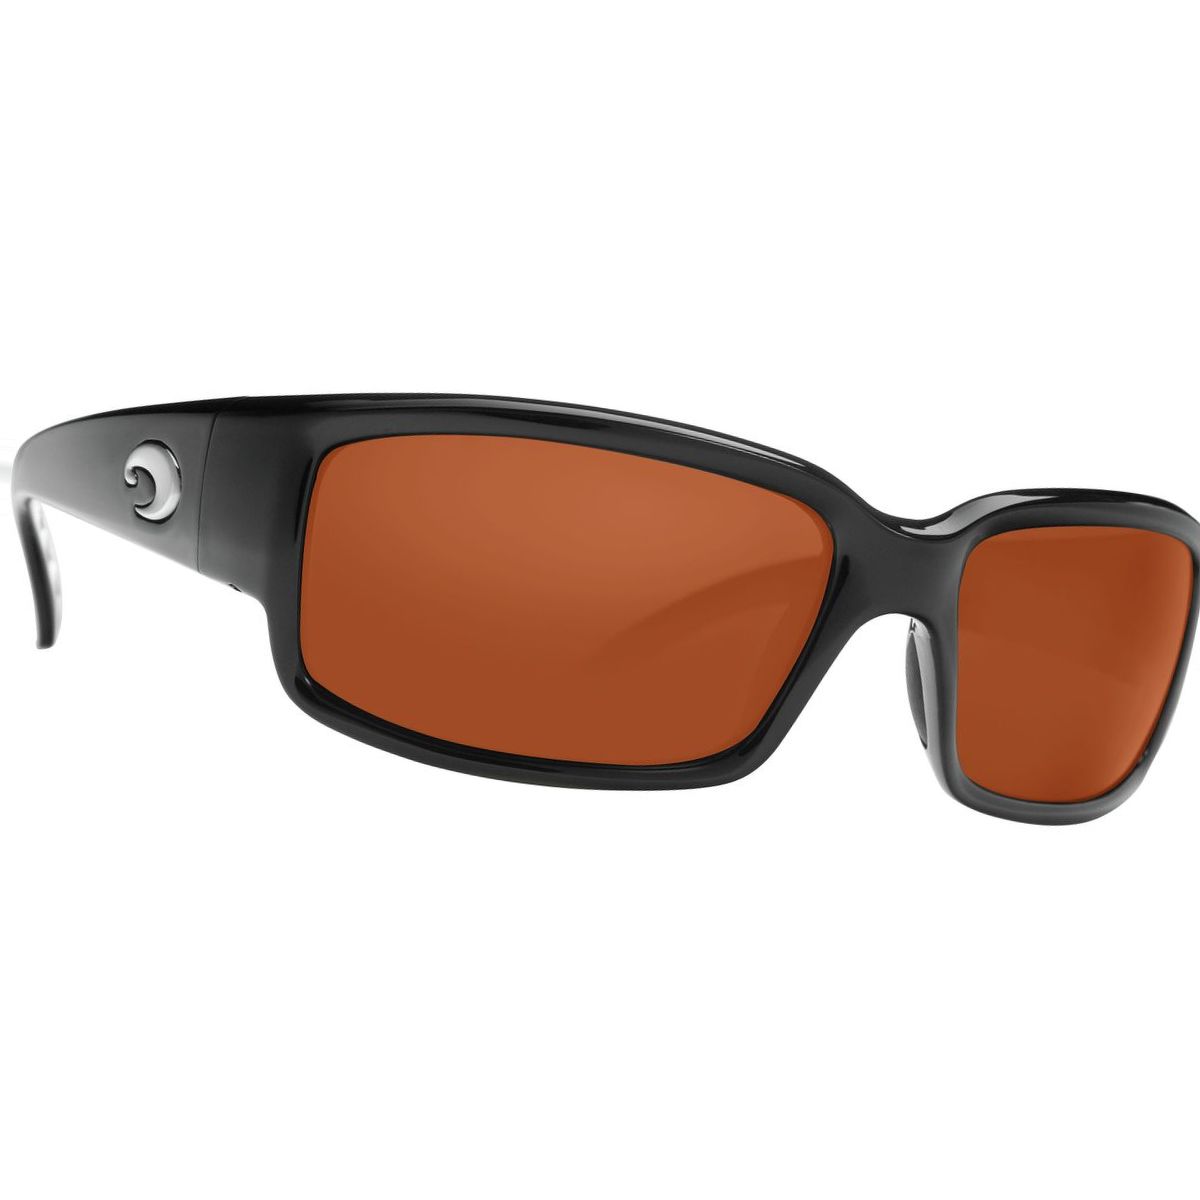 Costa Caballito 580P Polarized Sunglasses - Women's